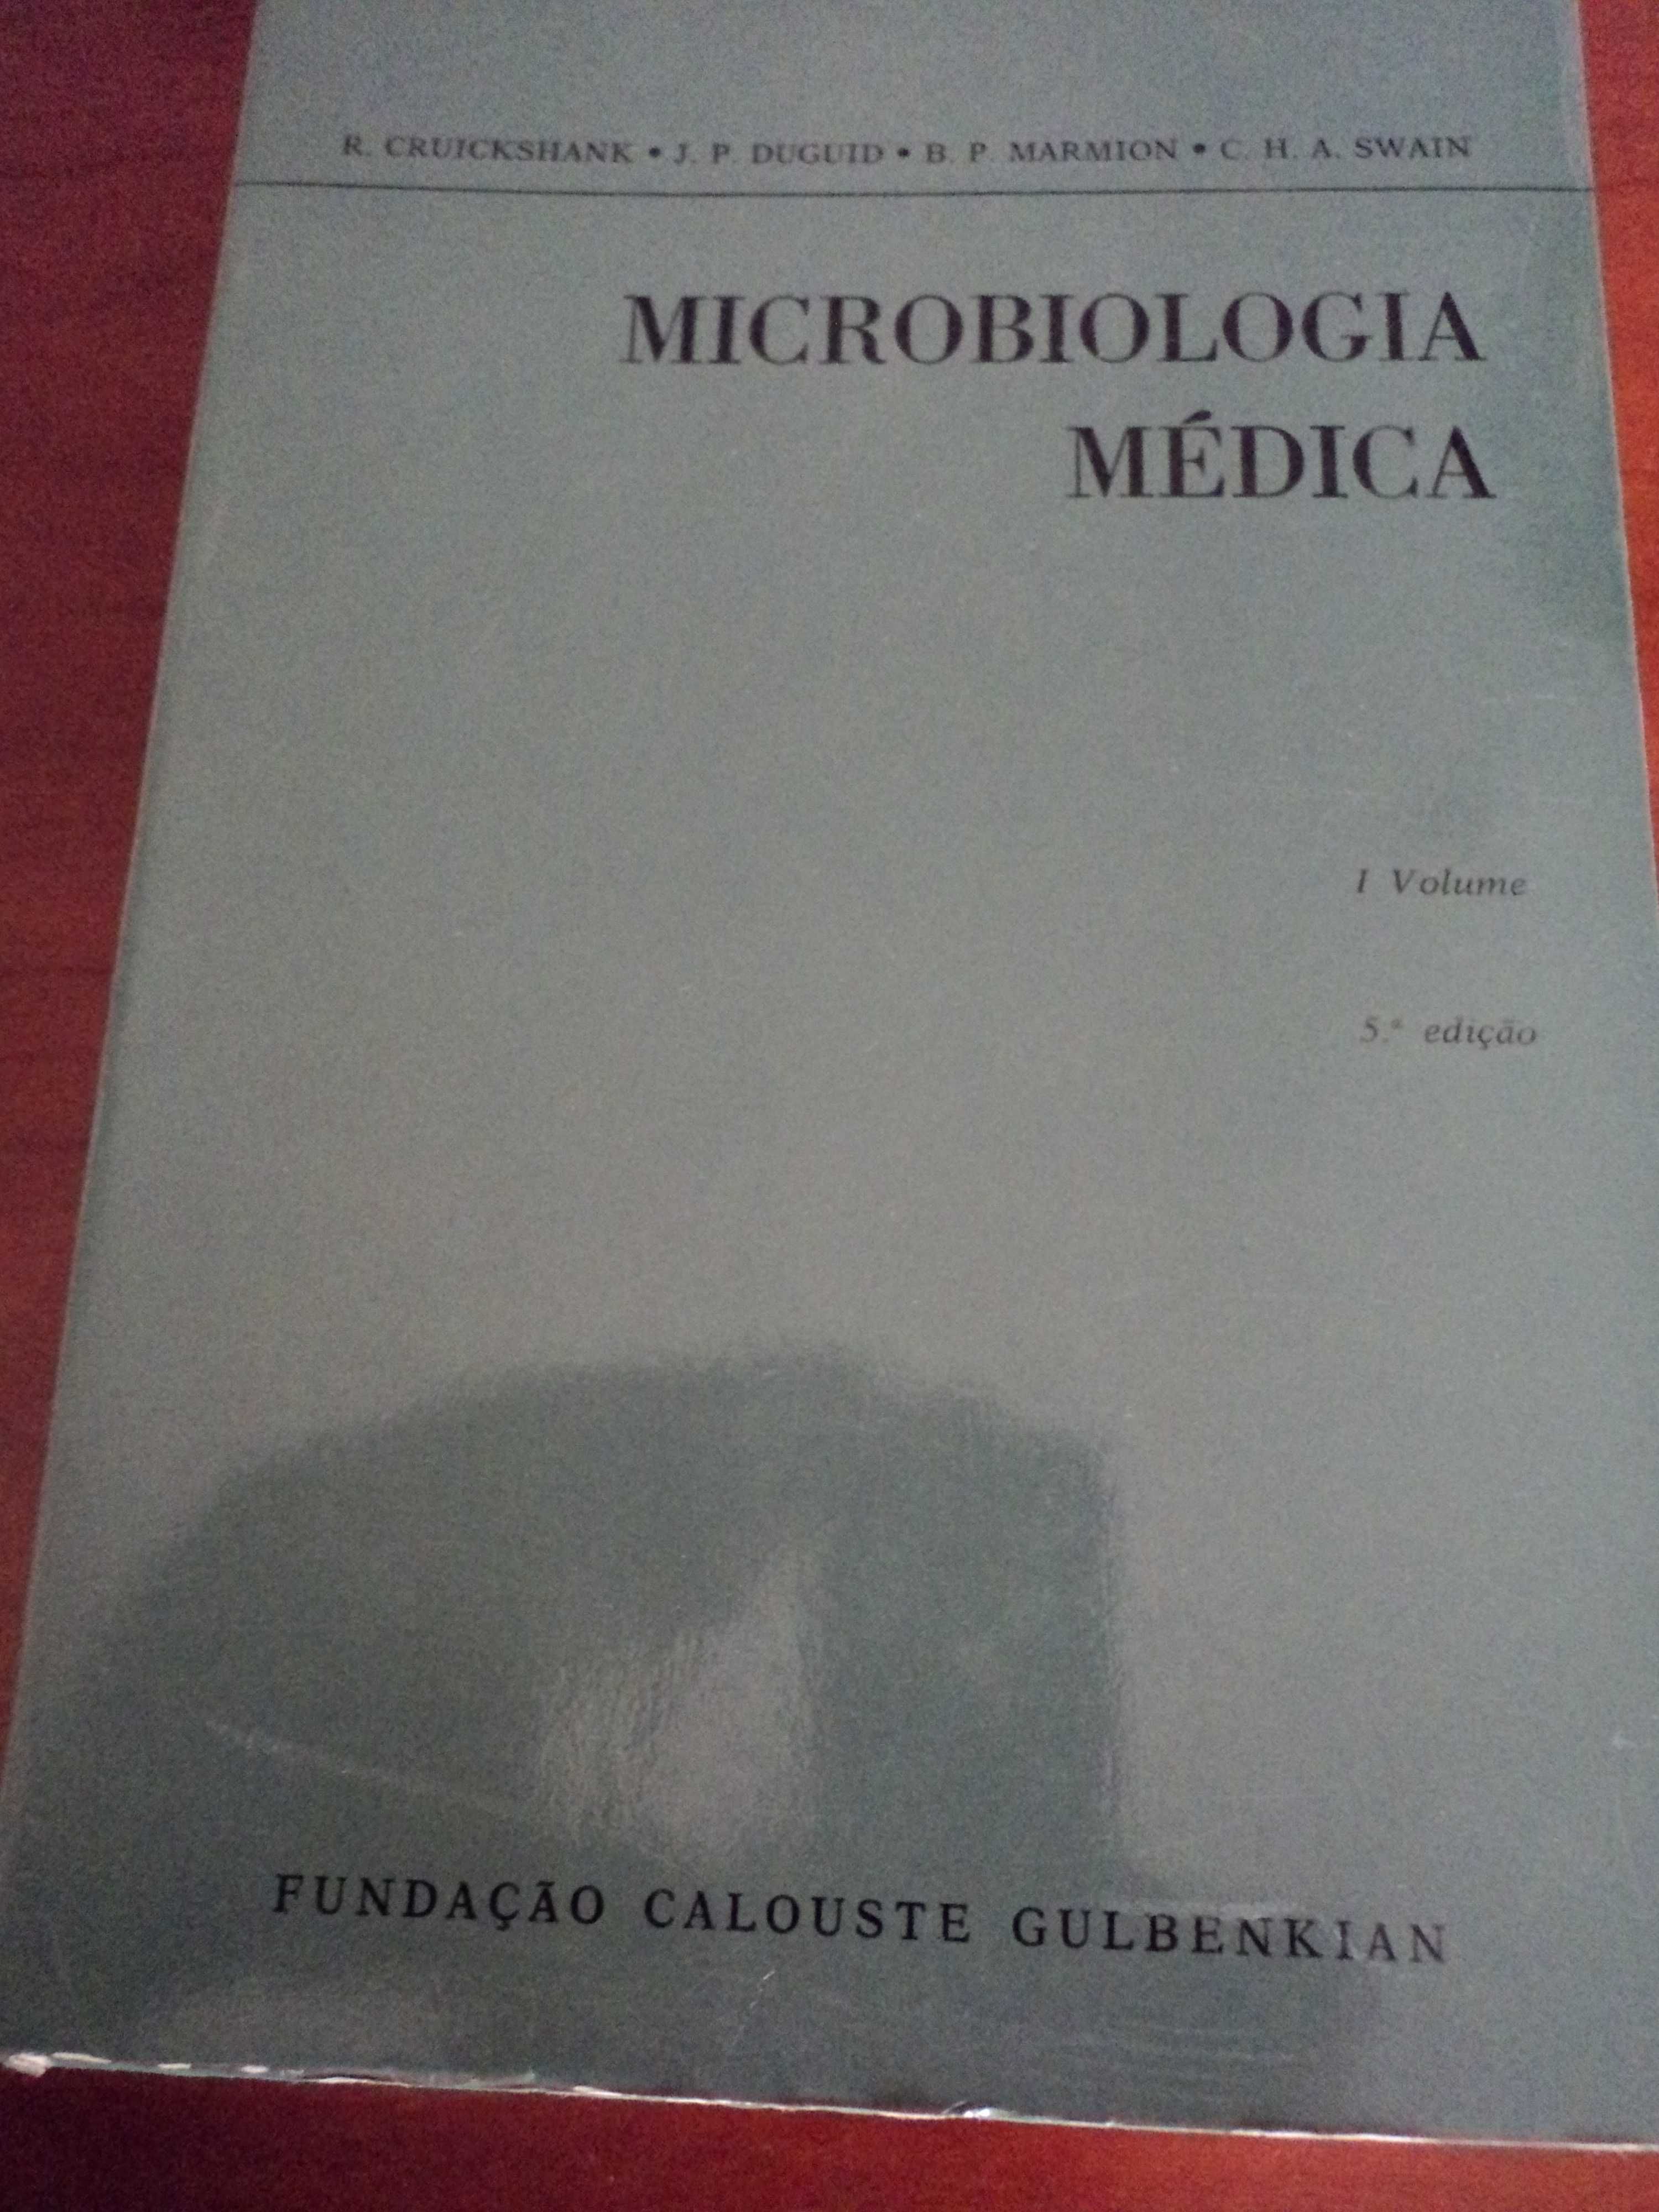 Livro sobre Microbiologia médica